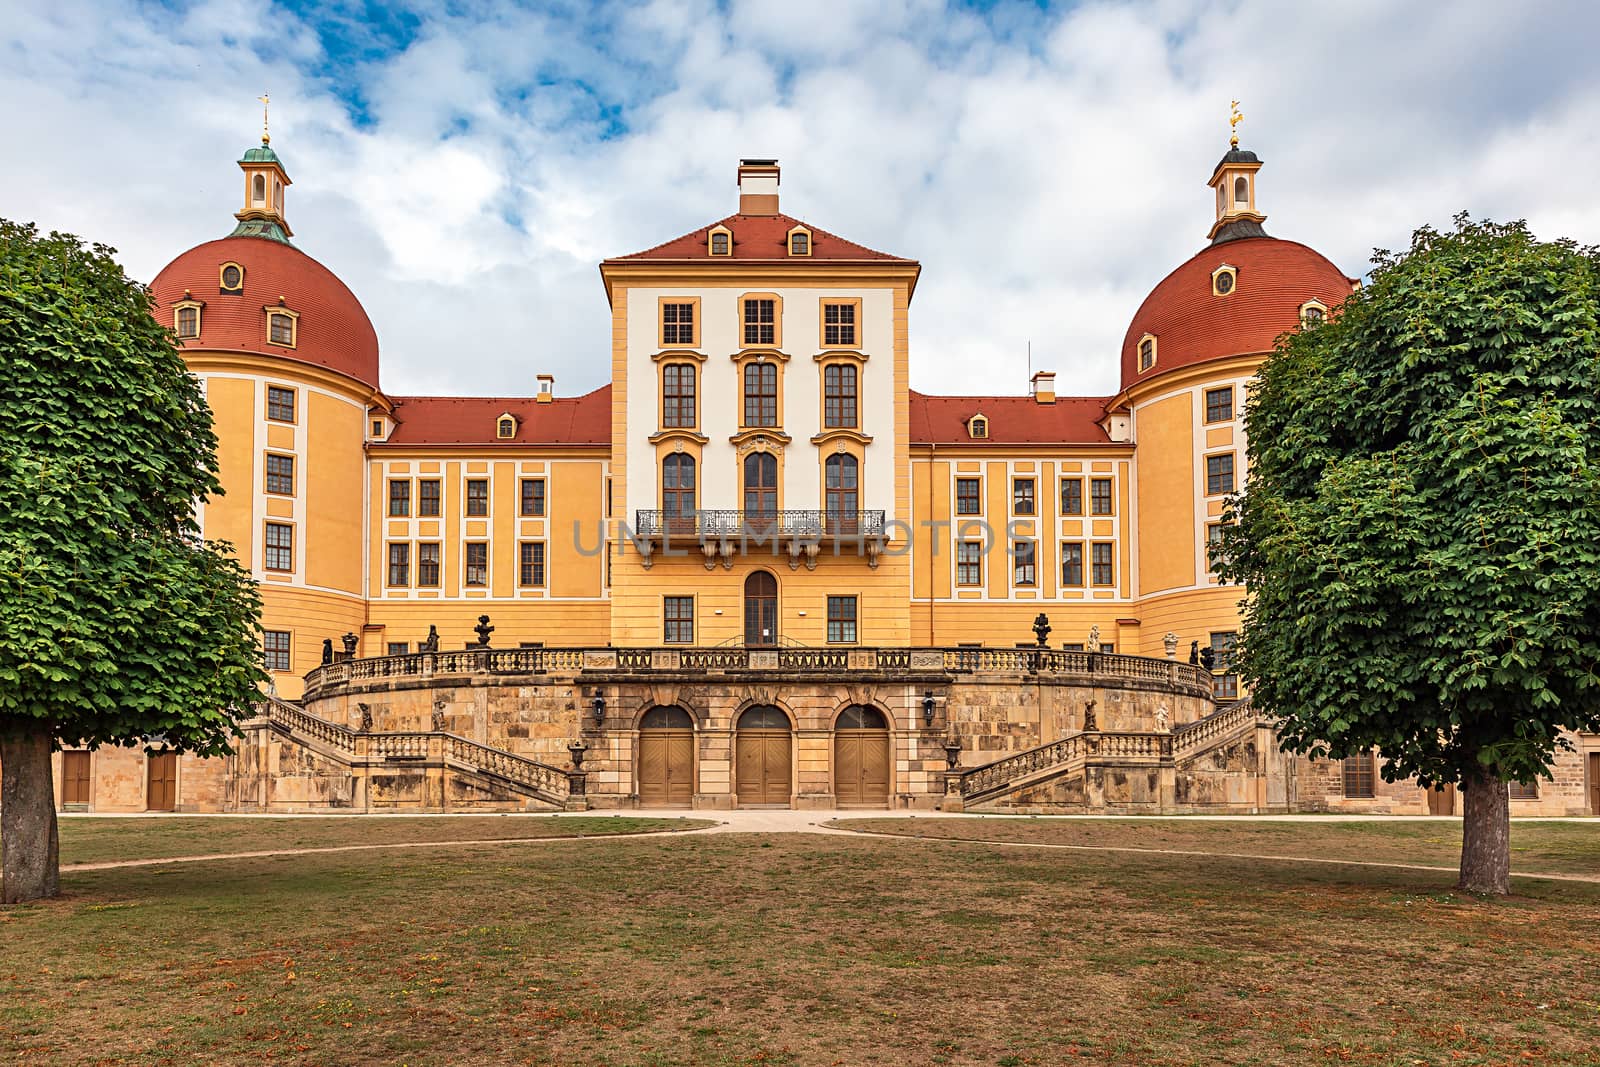 Baroque castle Moritzburg Castle, Moritzburg, near Dresden, Saxo by seka33